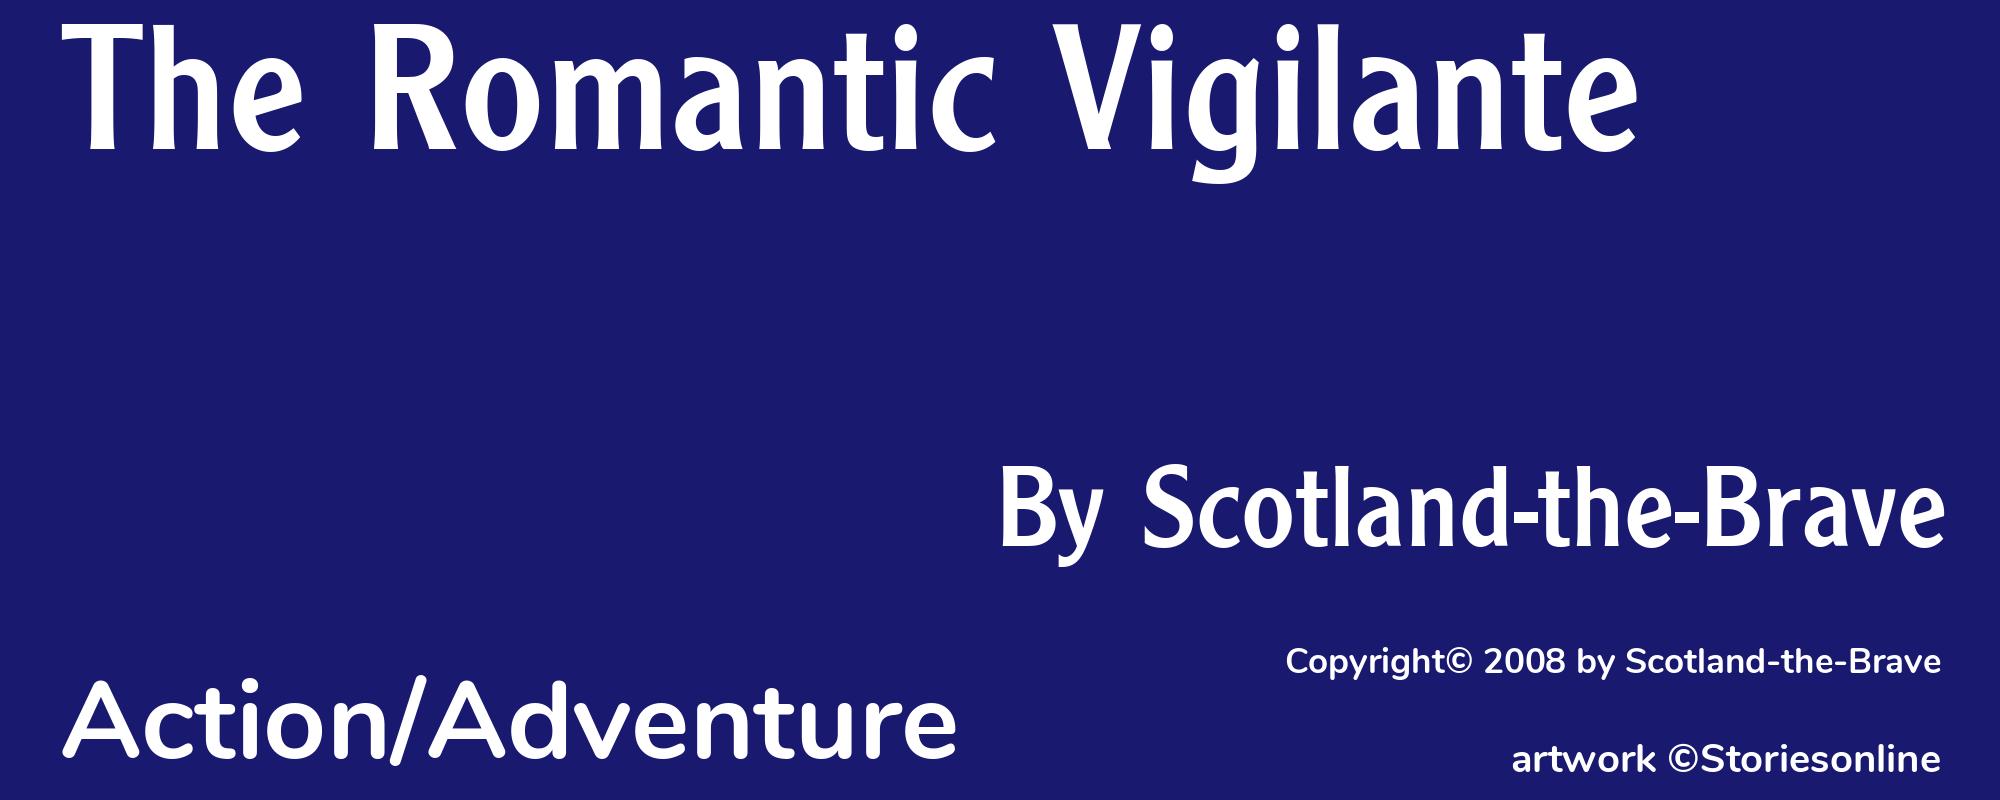 The Romantic Vigilante - Cover